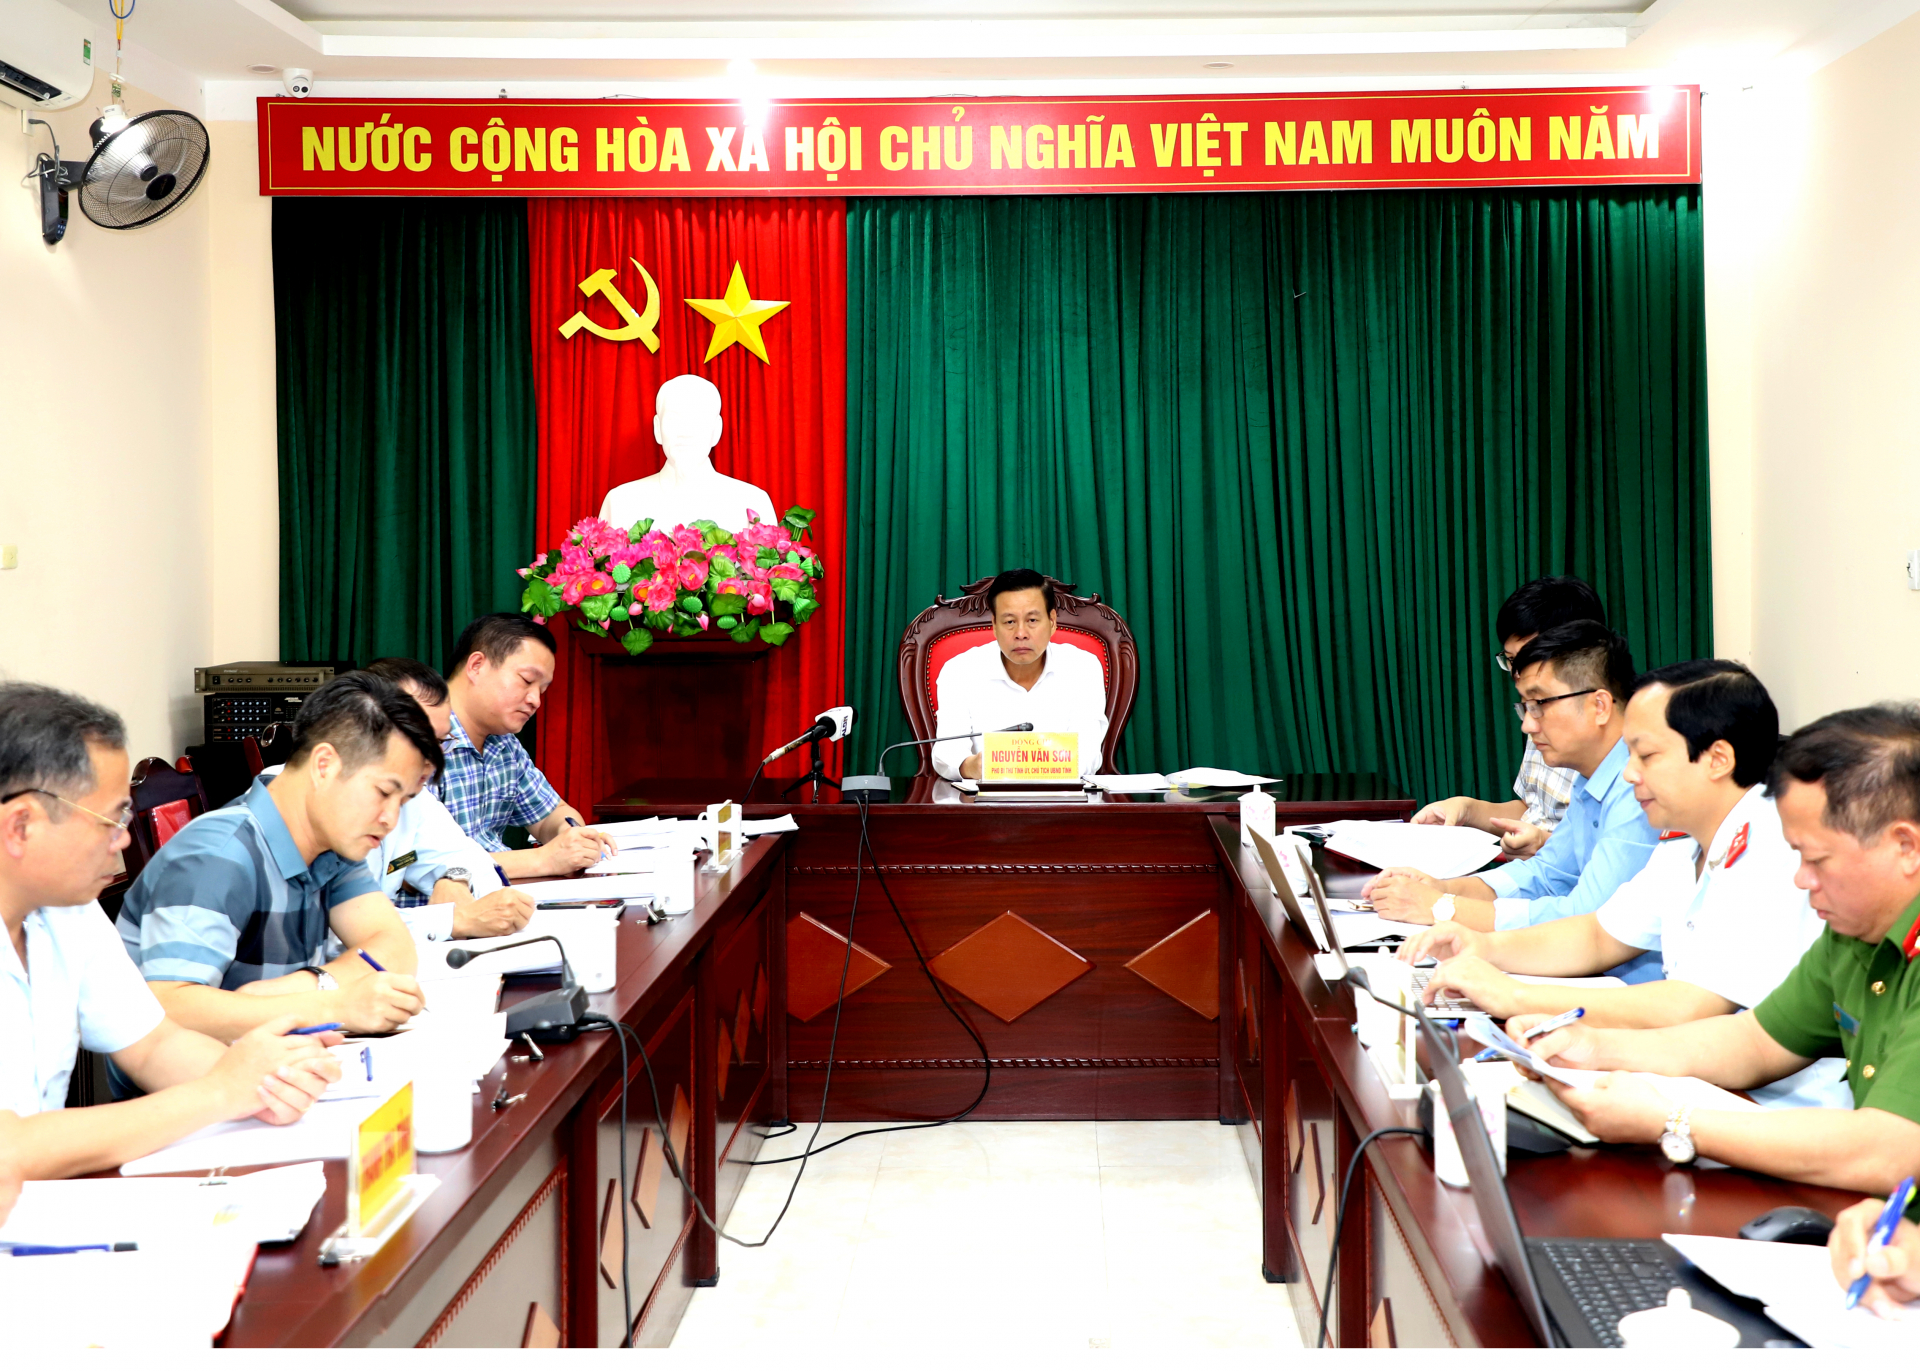 Chủ tịch UBND tỉnh Nguyễn Văn Sơn chủ trì buổi tiếp công dân.